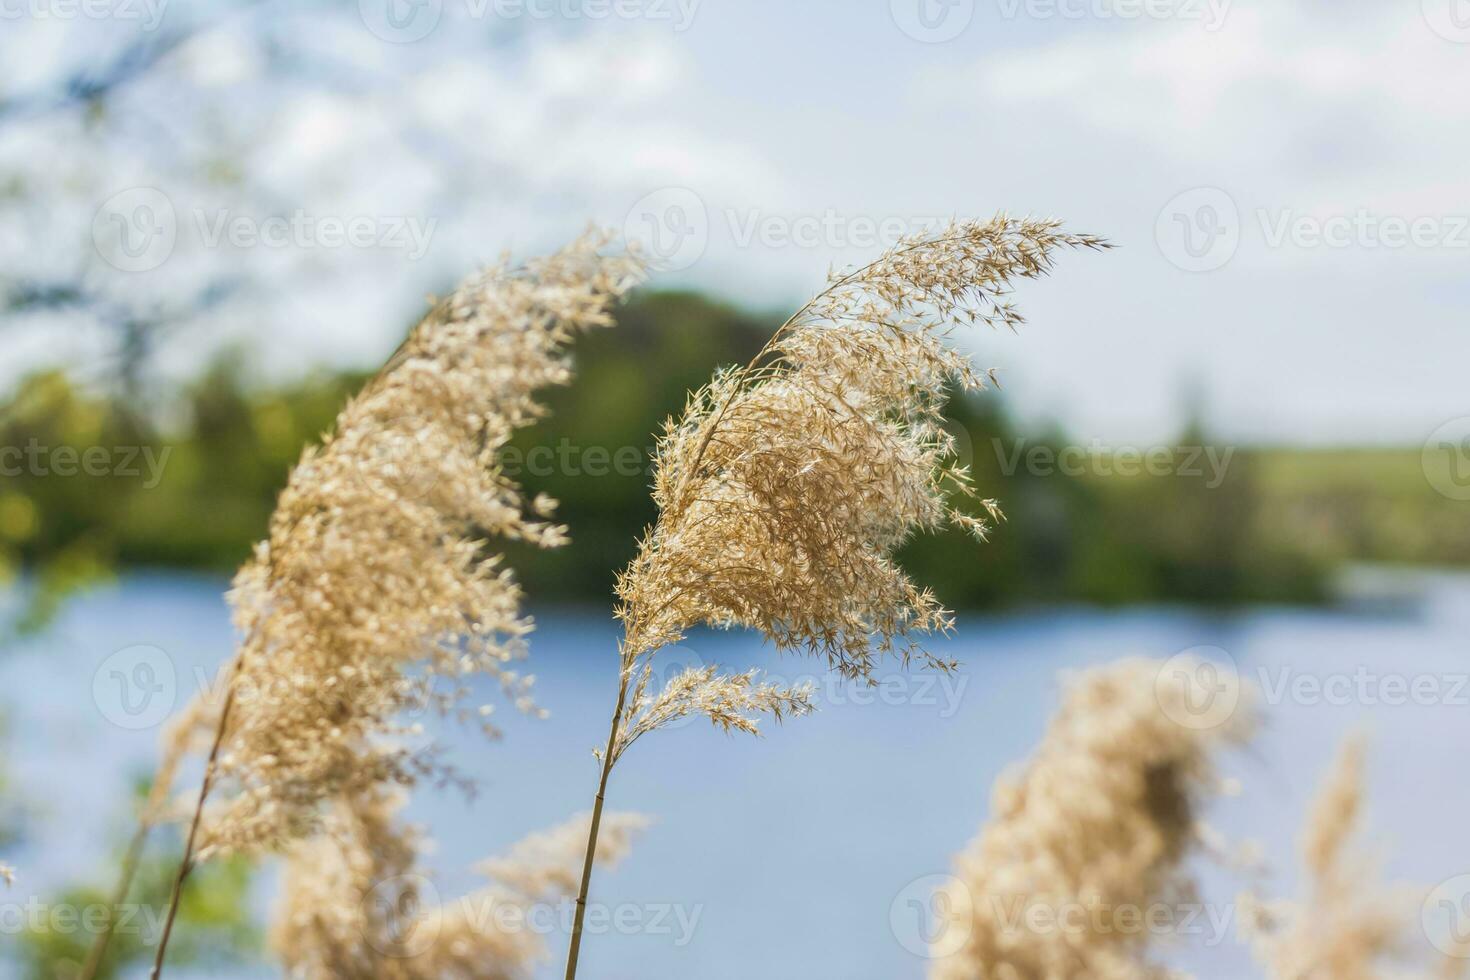 hierba de pampa en el lago, juncos, semillas de caña. las cañas del lago se mecen con el viento contra el cielo azul y el agua. fondo natural abstracto. hermoso patrón con colores brillantes foto